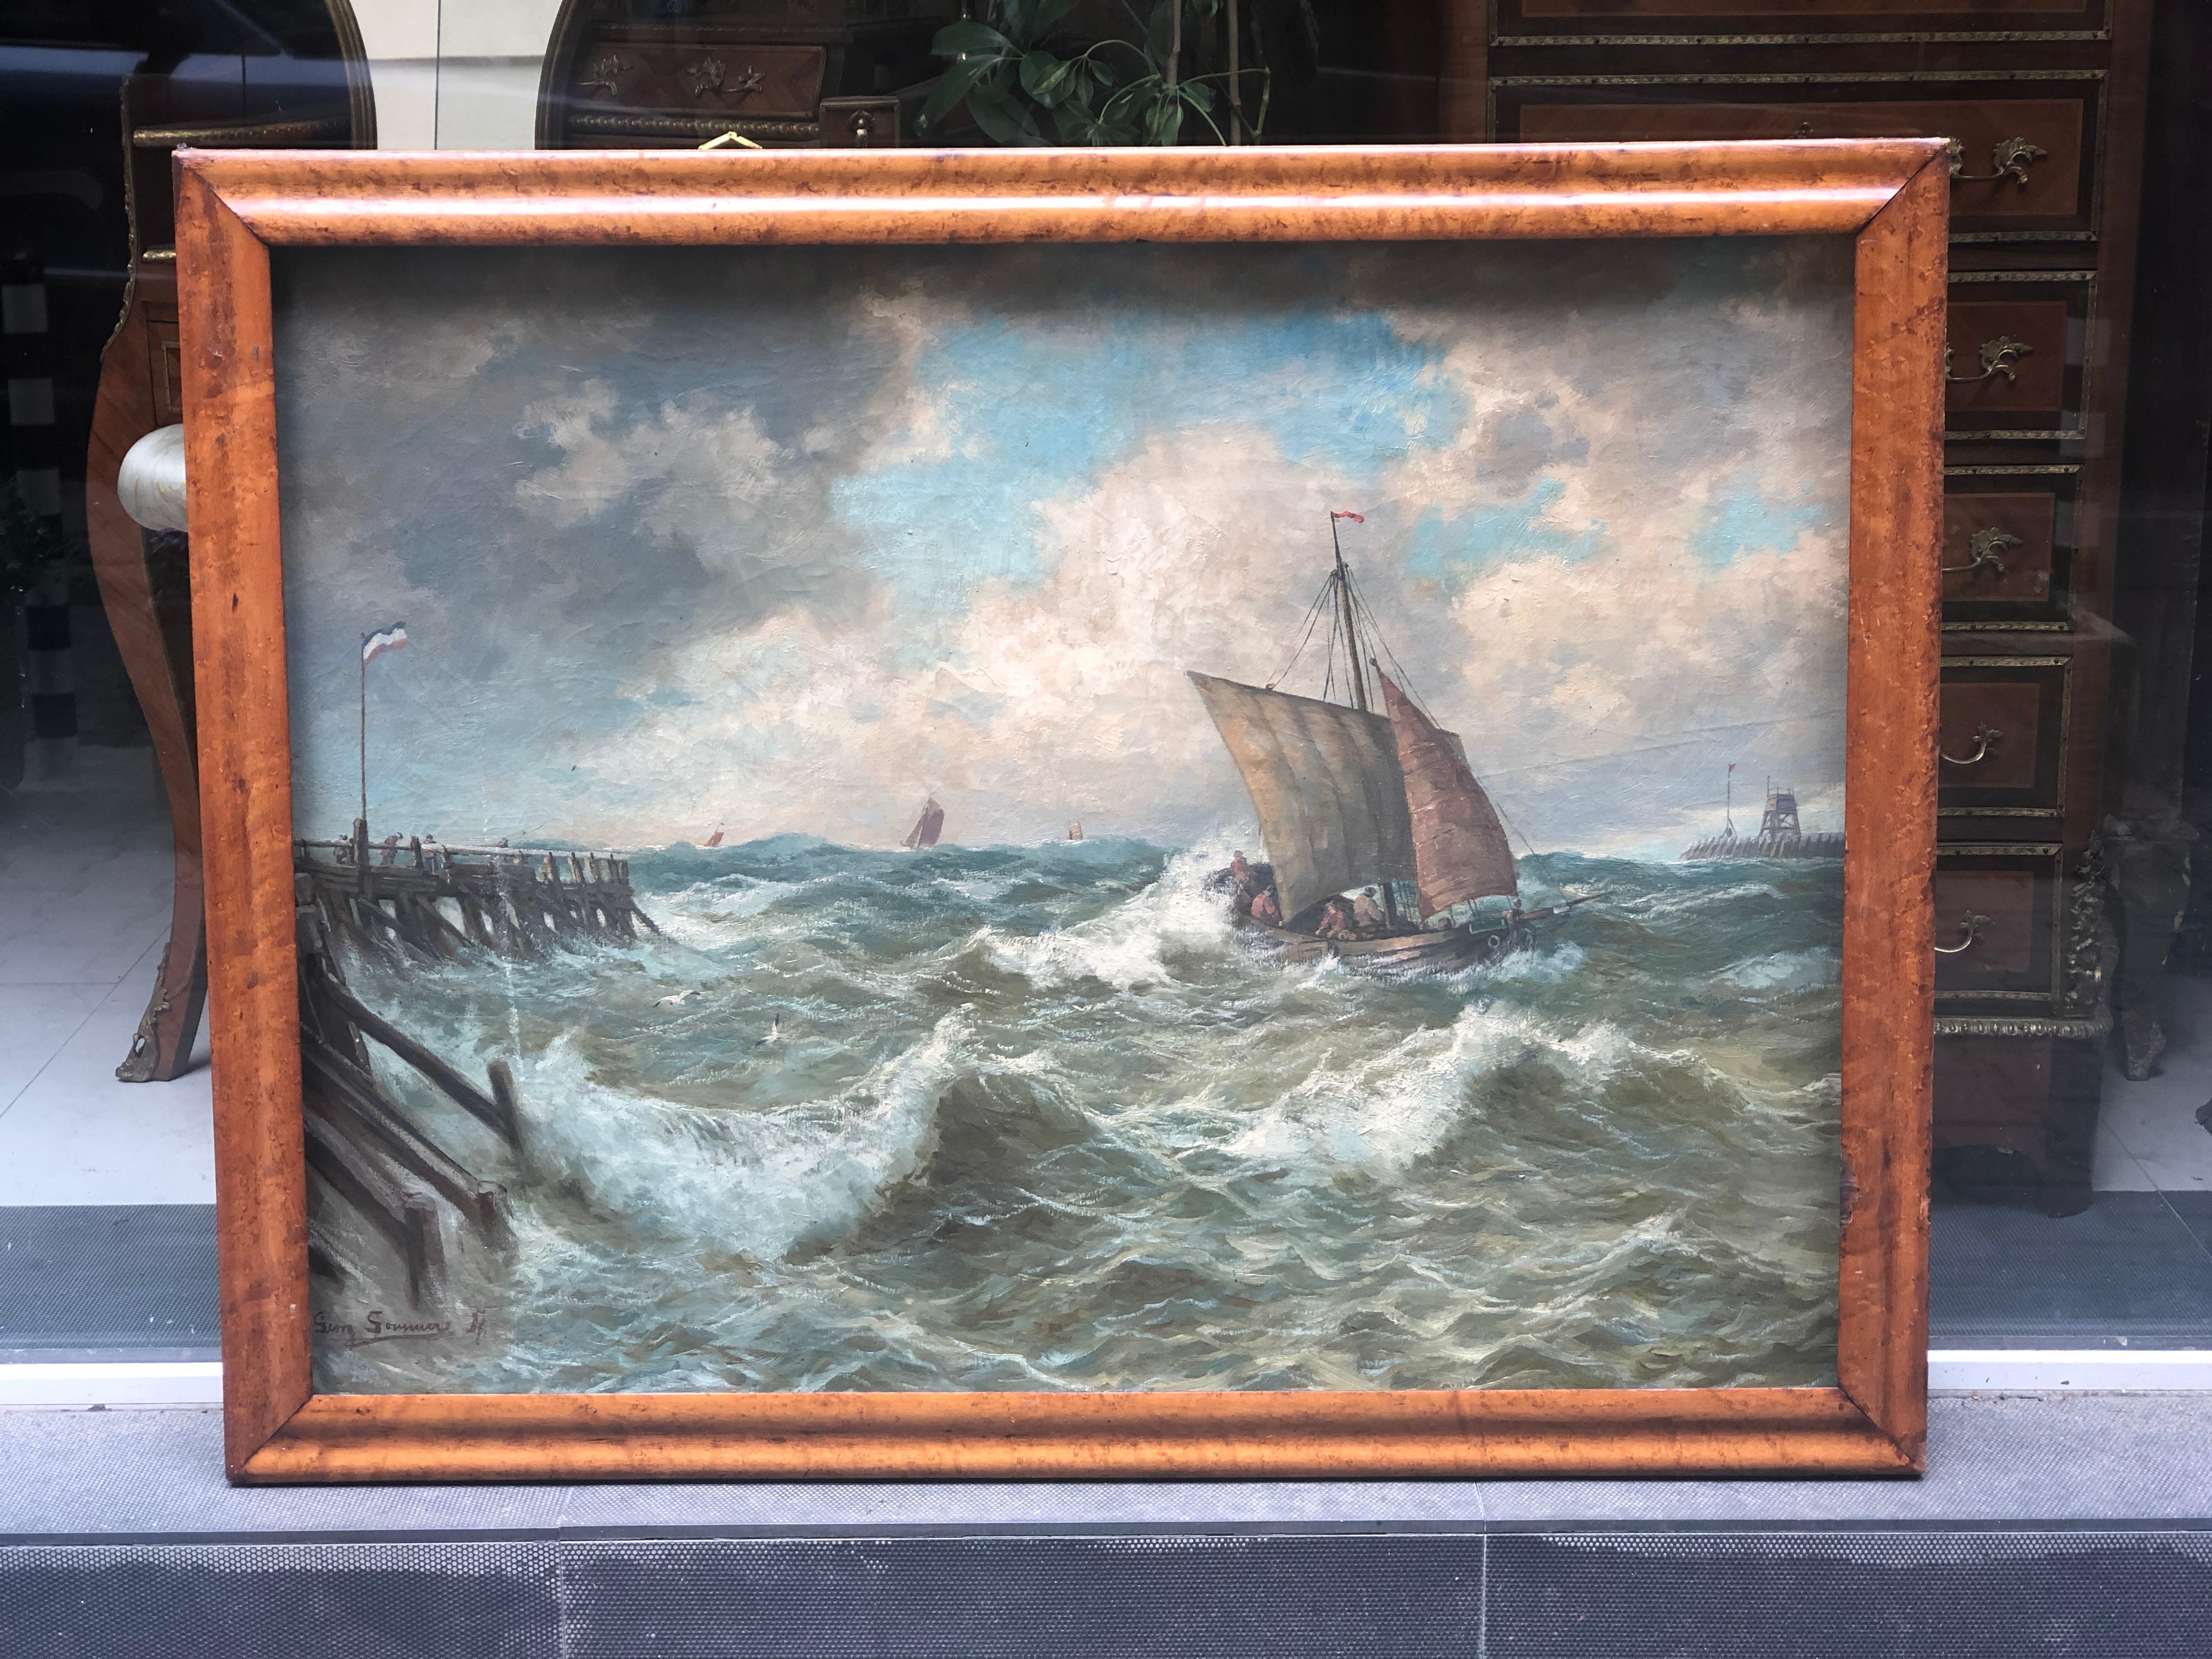 Gemälde des deutschen Malers Georg Sommer (1848-1917) - Öl auf Leinwand, das ein Boot in der Nähe des Hafens darstellt, das jedoch von den wilden Wellen erfasst wird...
Palisander-Rahmen.
Deutschland, um 1890